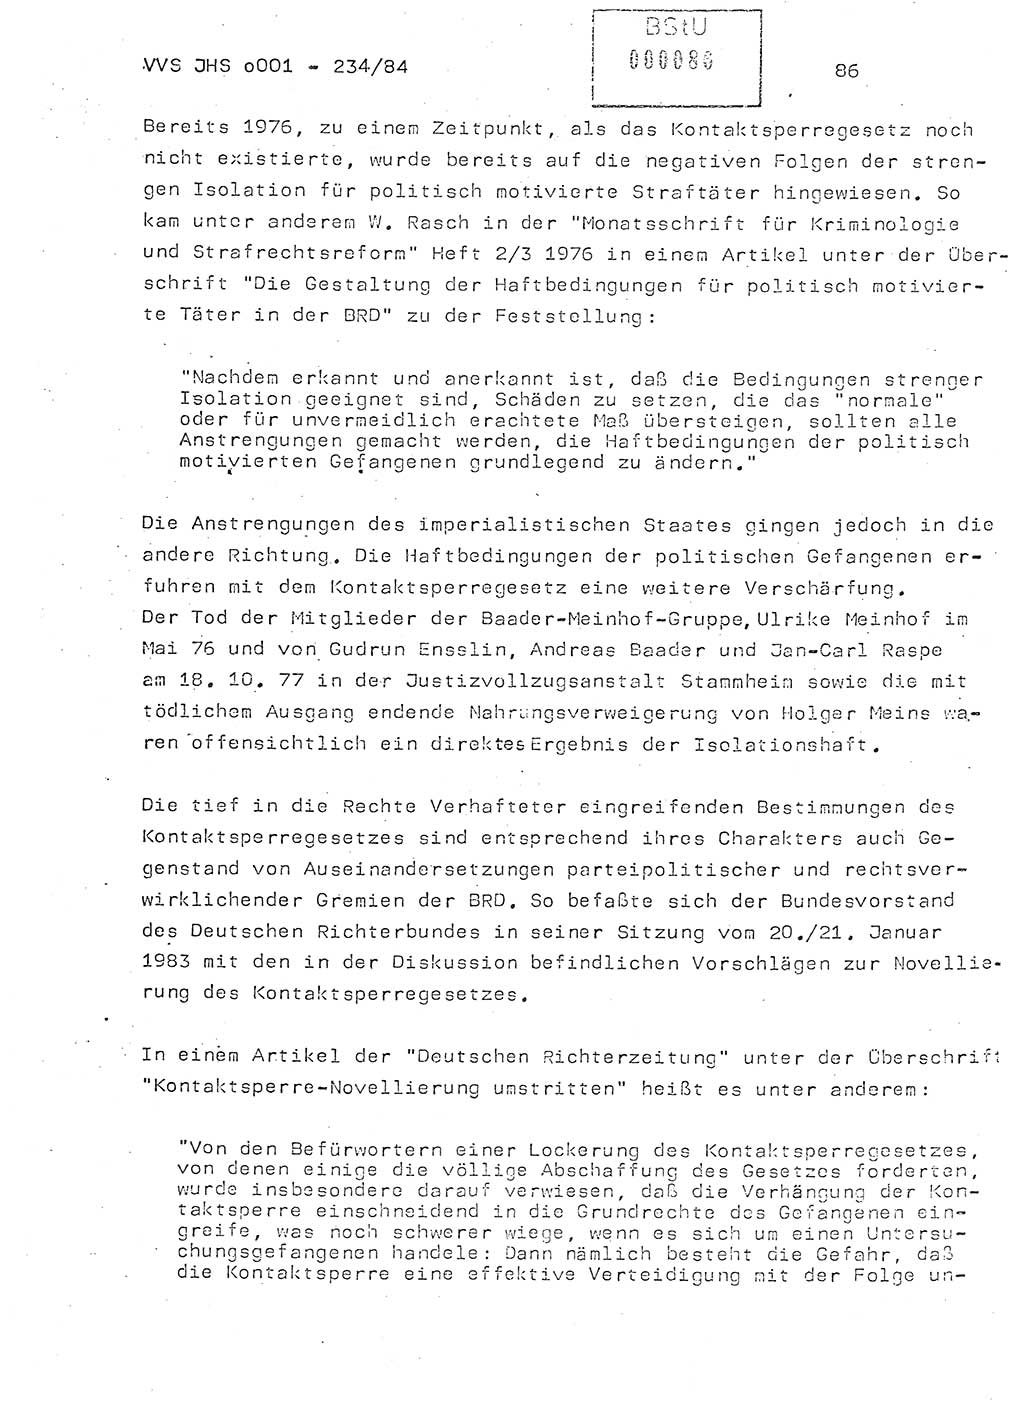 Dissertation Oberst Siegfried Rataizick (Abt. ⅩⅣ), Oberstleutnant Volkmar Heinz (Abt. ⅩⅣ), Oberstleutnant Werner Stein (HA Ⅸ), Hauptmann Heinz Conrad (JHS), Ministerium für Staatssicherheit (MfS) [Deutsche Demokratische Republik (DDR)], Juristische Hochschule (JHS), Vertrauliche Verschlußsache (VVS) o001-234/84, Potsdam 1984, Seite 86 (Diss. MfS DDR JHS VVS o001-234/84 1984, S. 86)